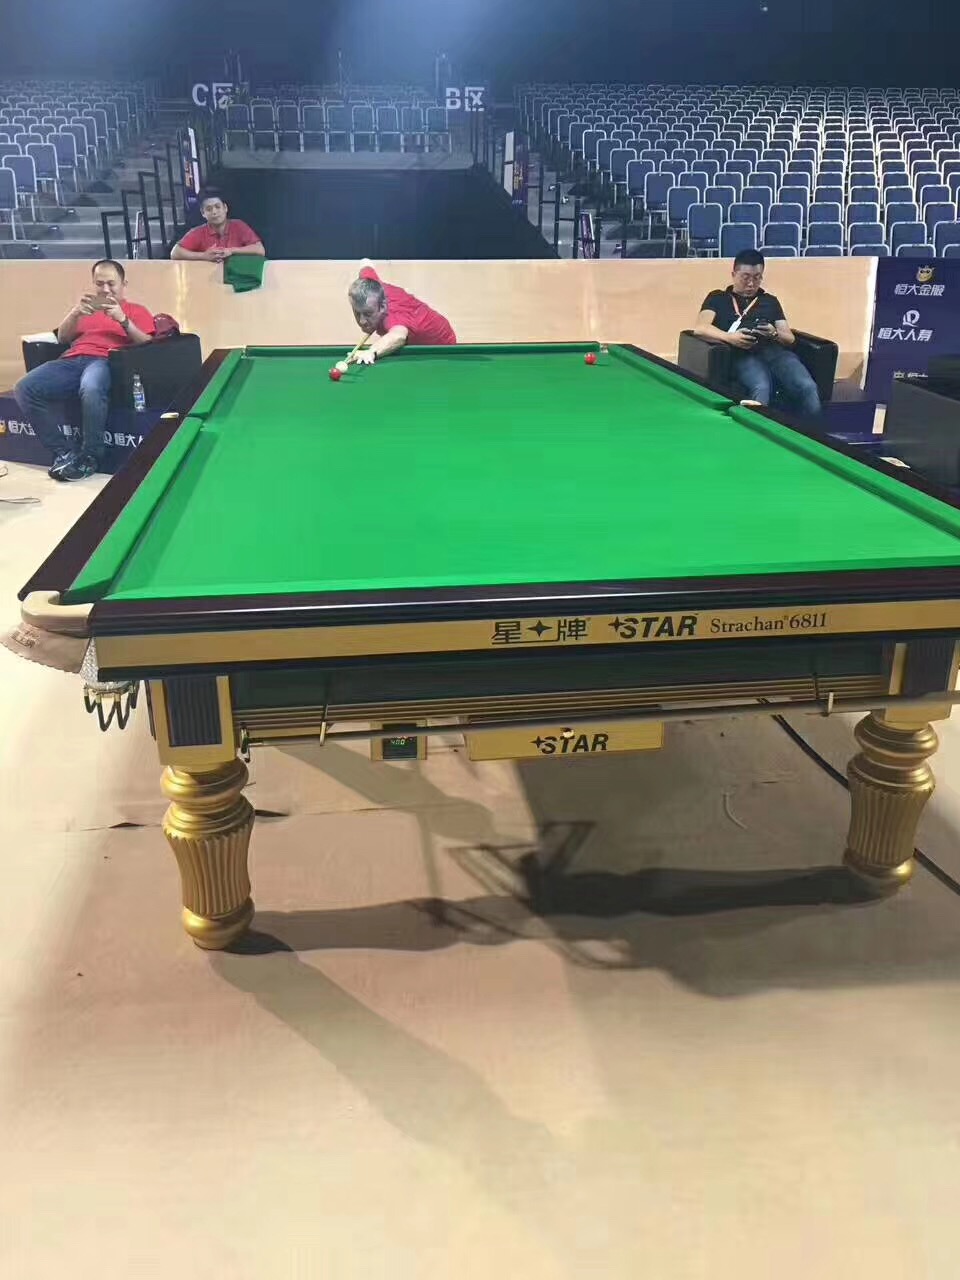 星牌 英式斯诺克台球桌 标准尺寸桌球台 XW101-12S世锦赛台